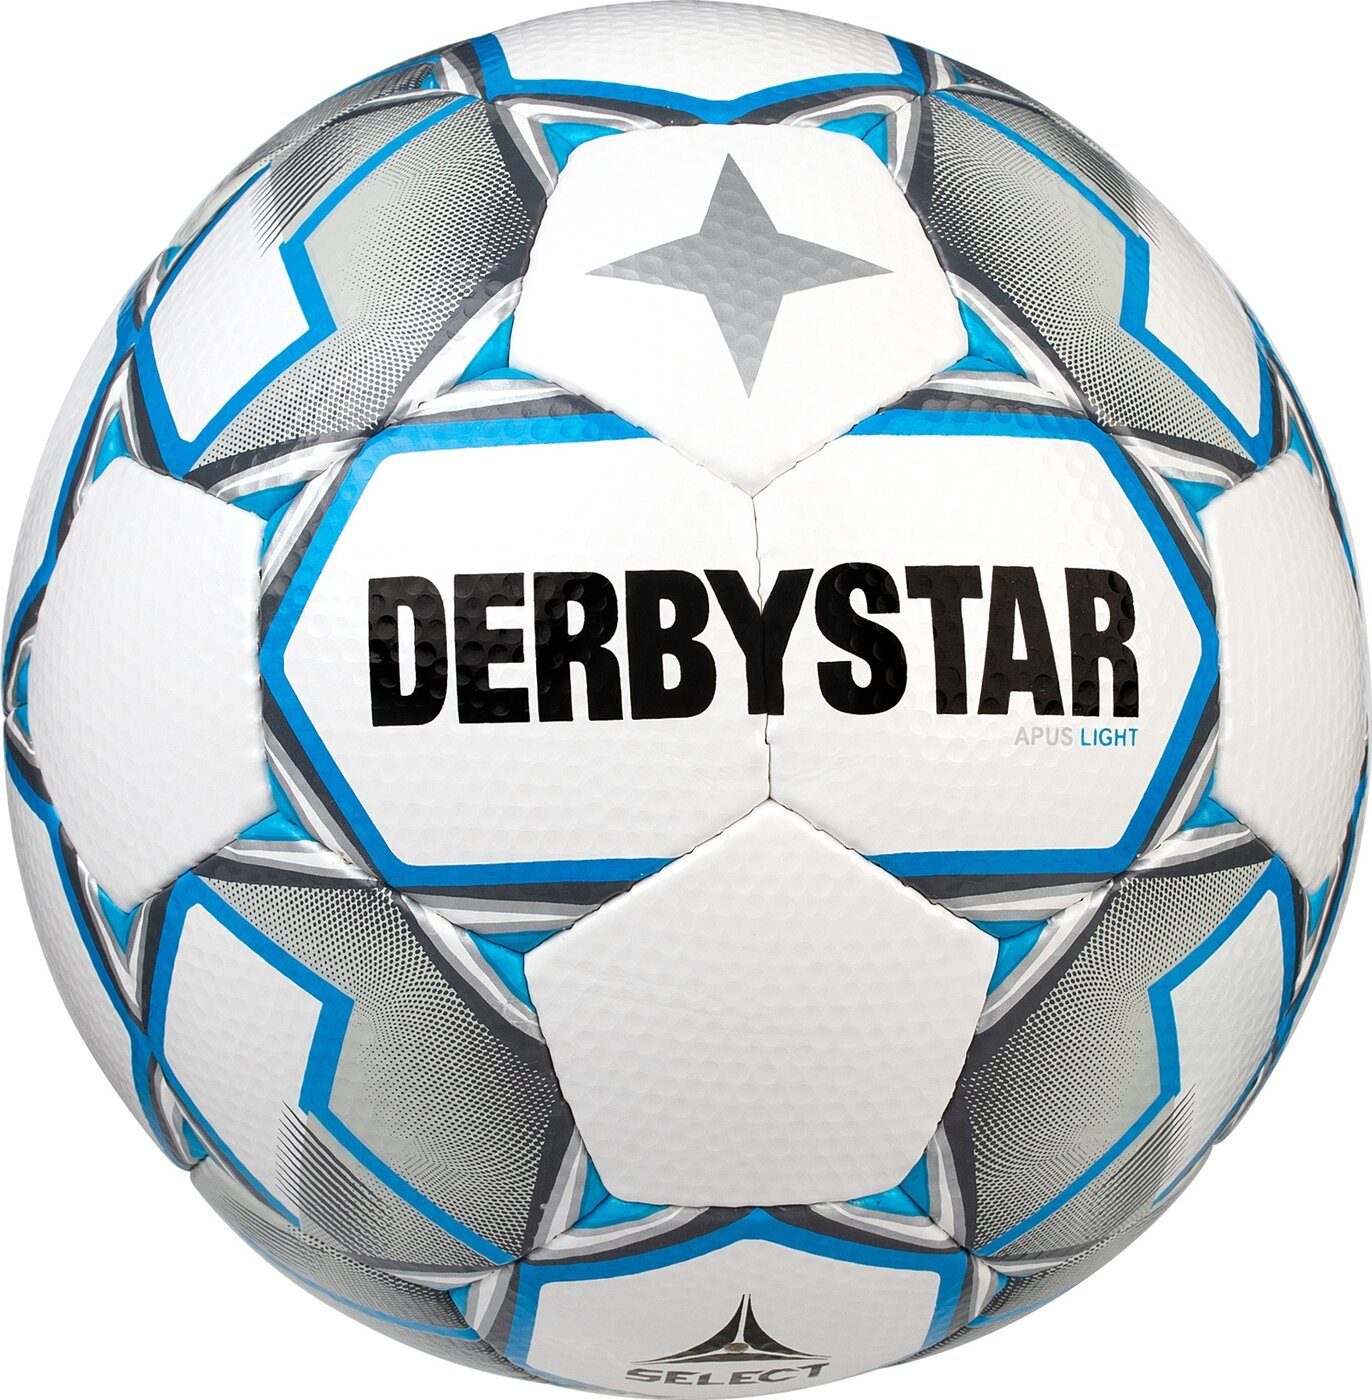 Derbystar Fußball Apus Light V20 WEIß GRAU BLAU